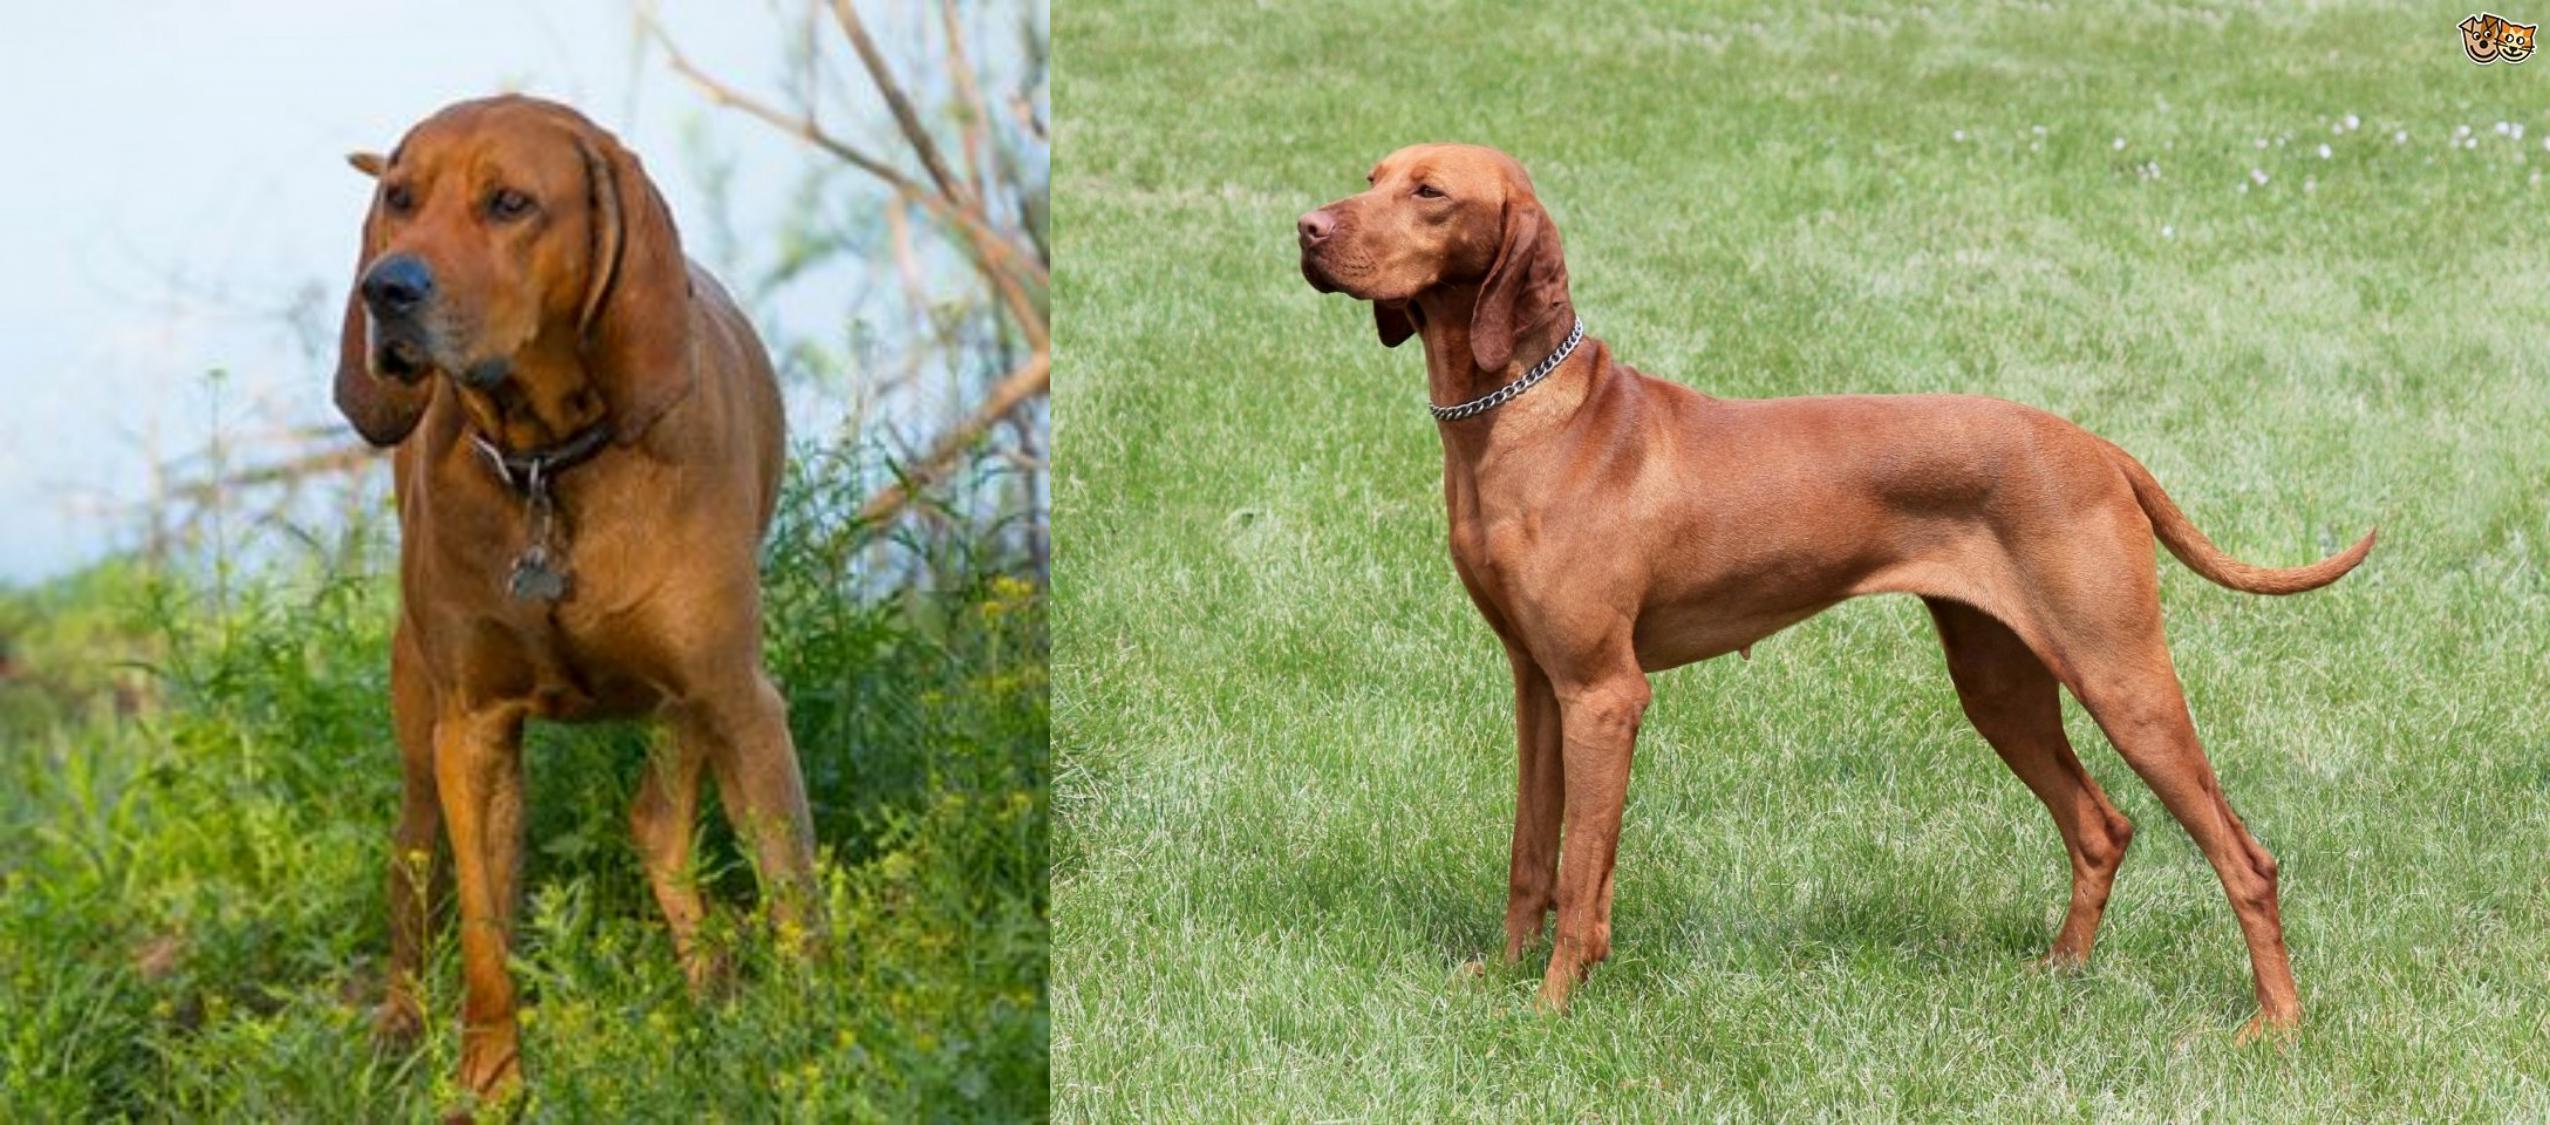 Redbone Coonhound Dog Breed Information Redbone Coonhound - Wikipedia Redbo...